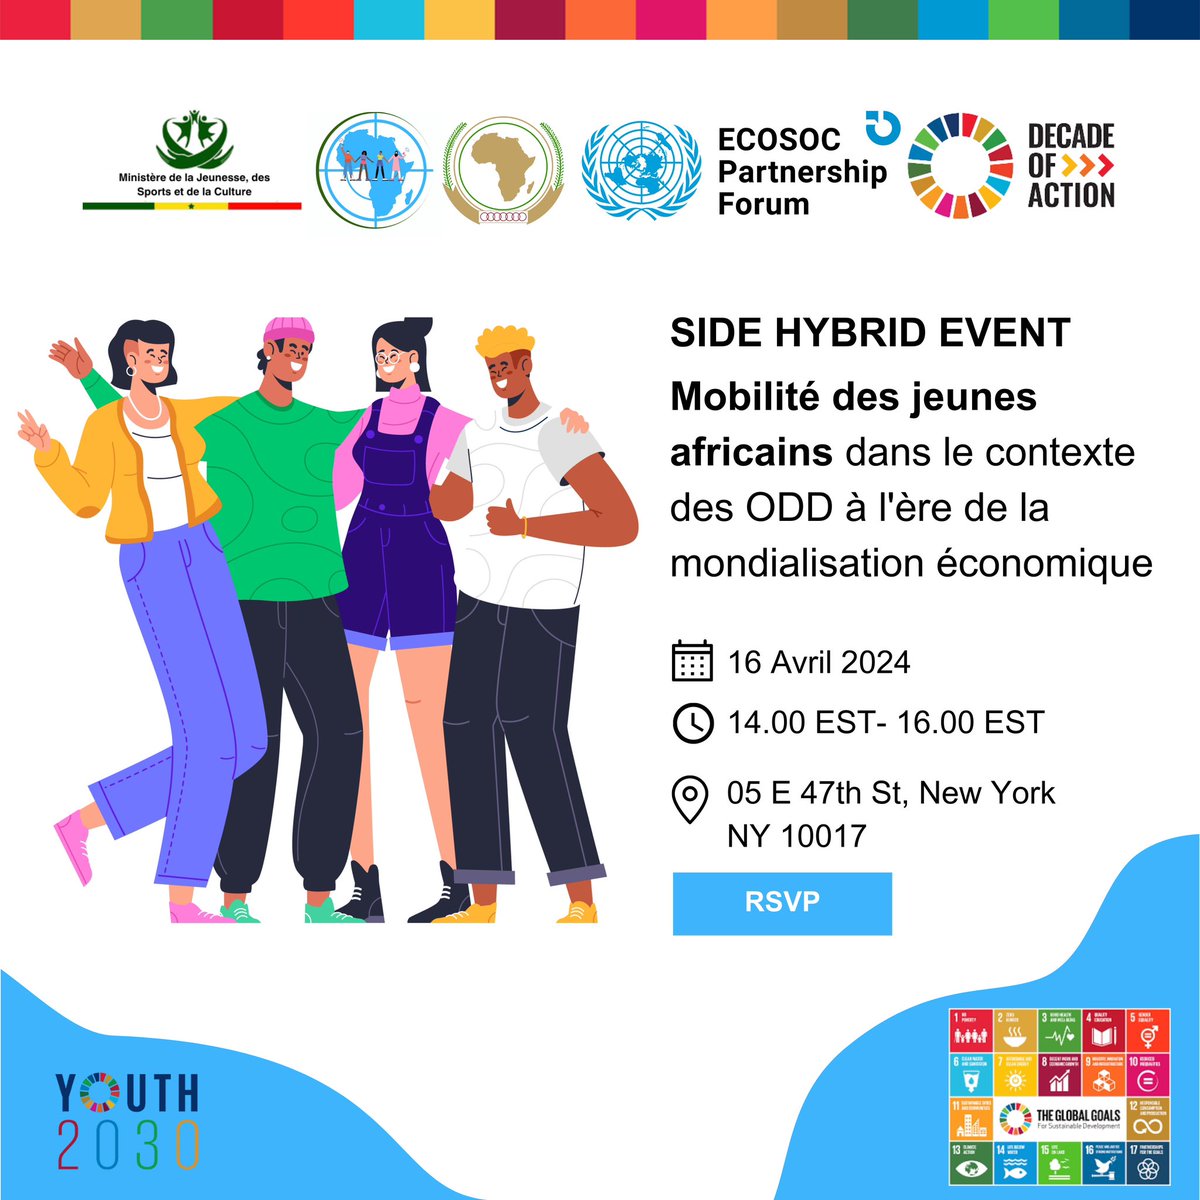 Le Ministère de la Jeunesse, des Sports et de la Culture 🇸🇳, en partenariat avec l'Organisation de Plaidoyer de la Jeunesse Africaine auprès des Nations Unies et l’Union Africaine, organise une conférence parallèle hybride dans le cadre du #YouthECOSOCForum engageant la jeunesse…